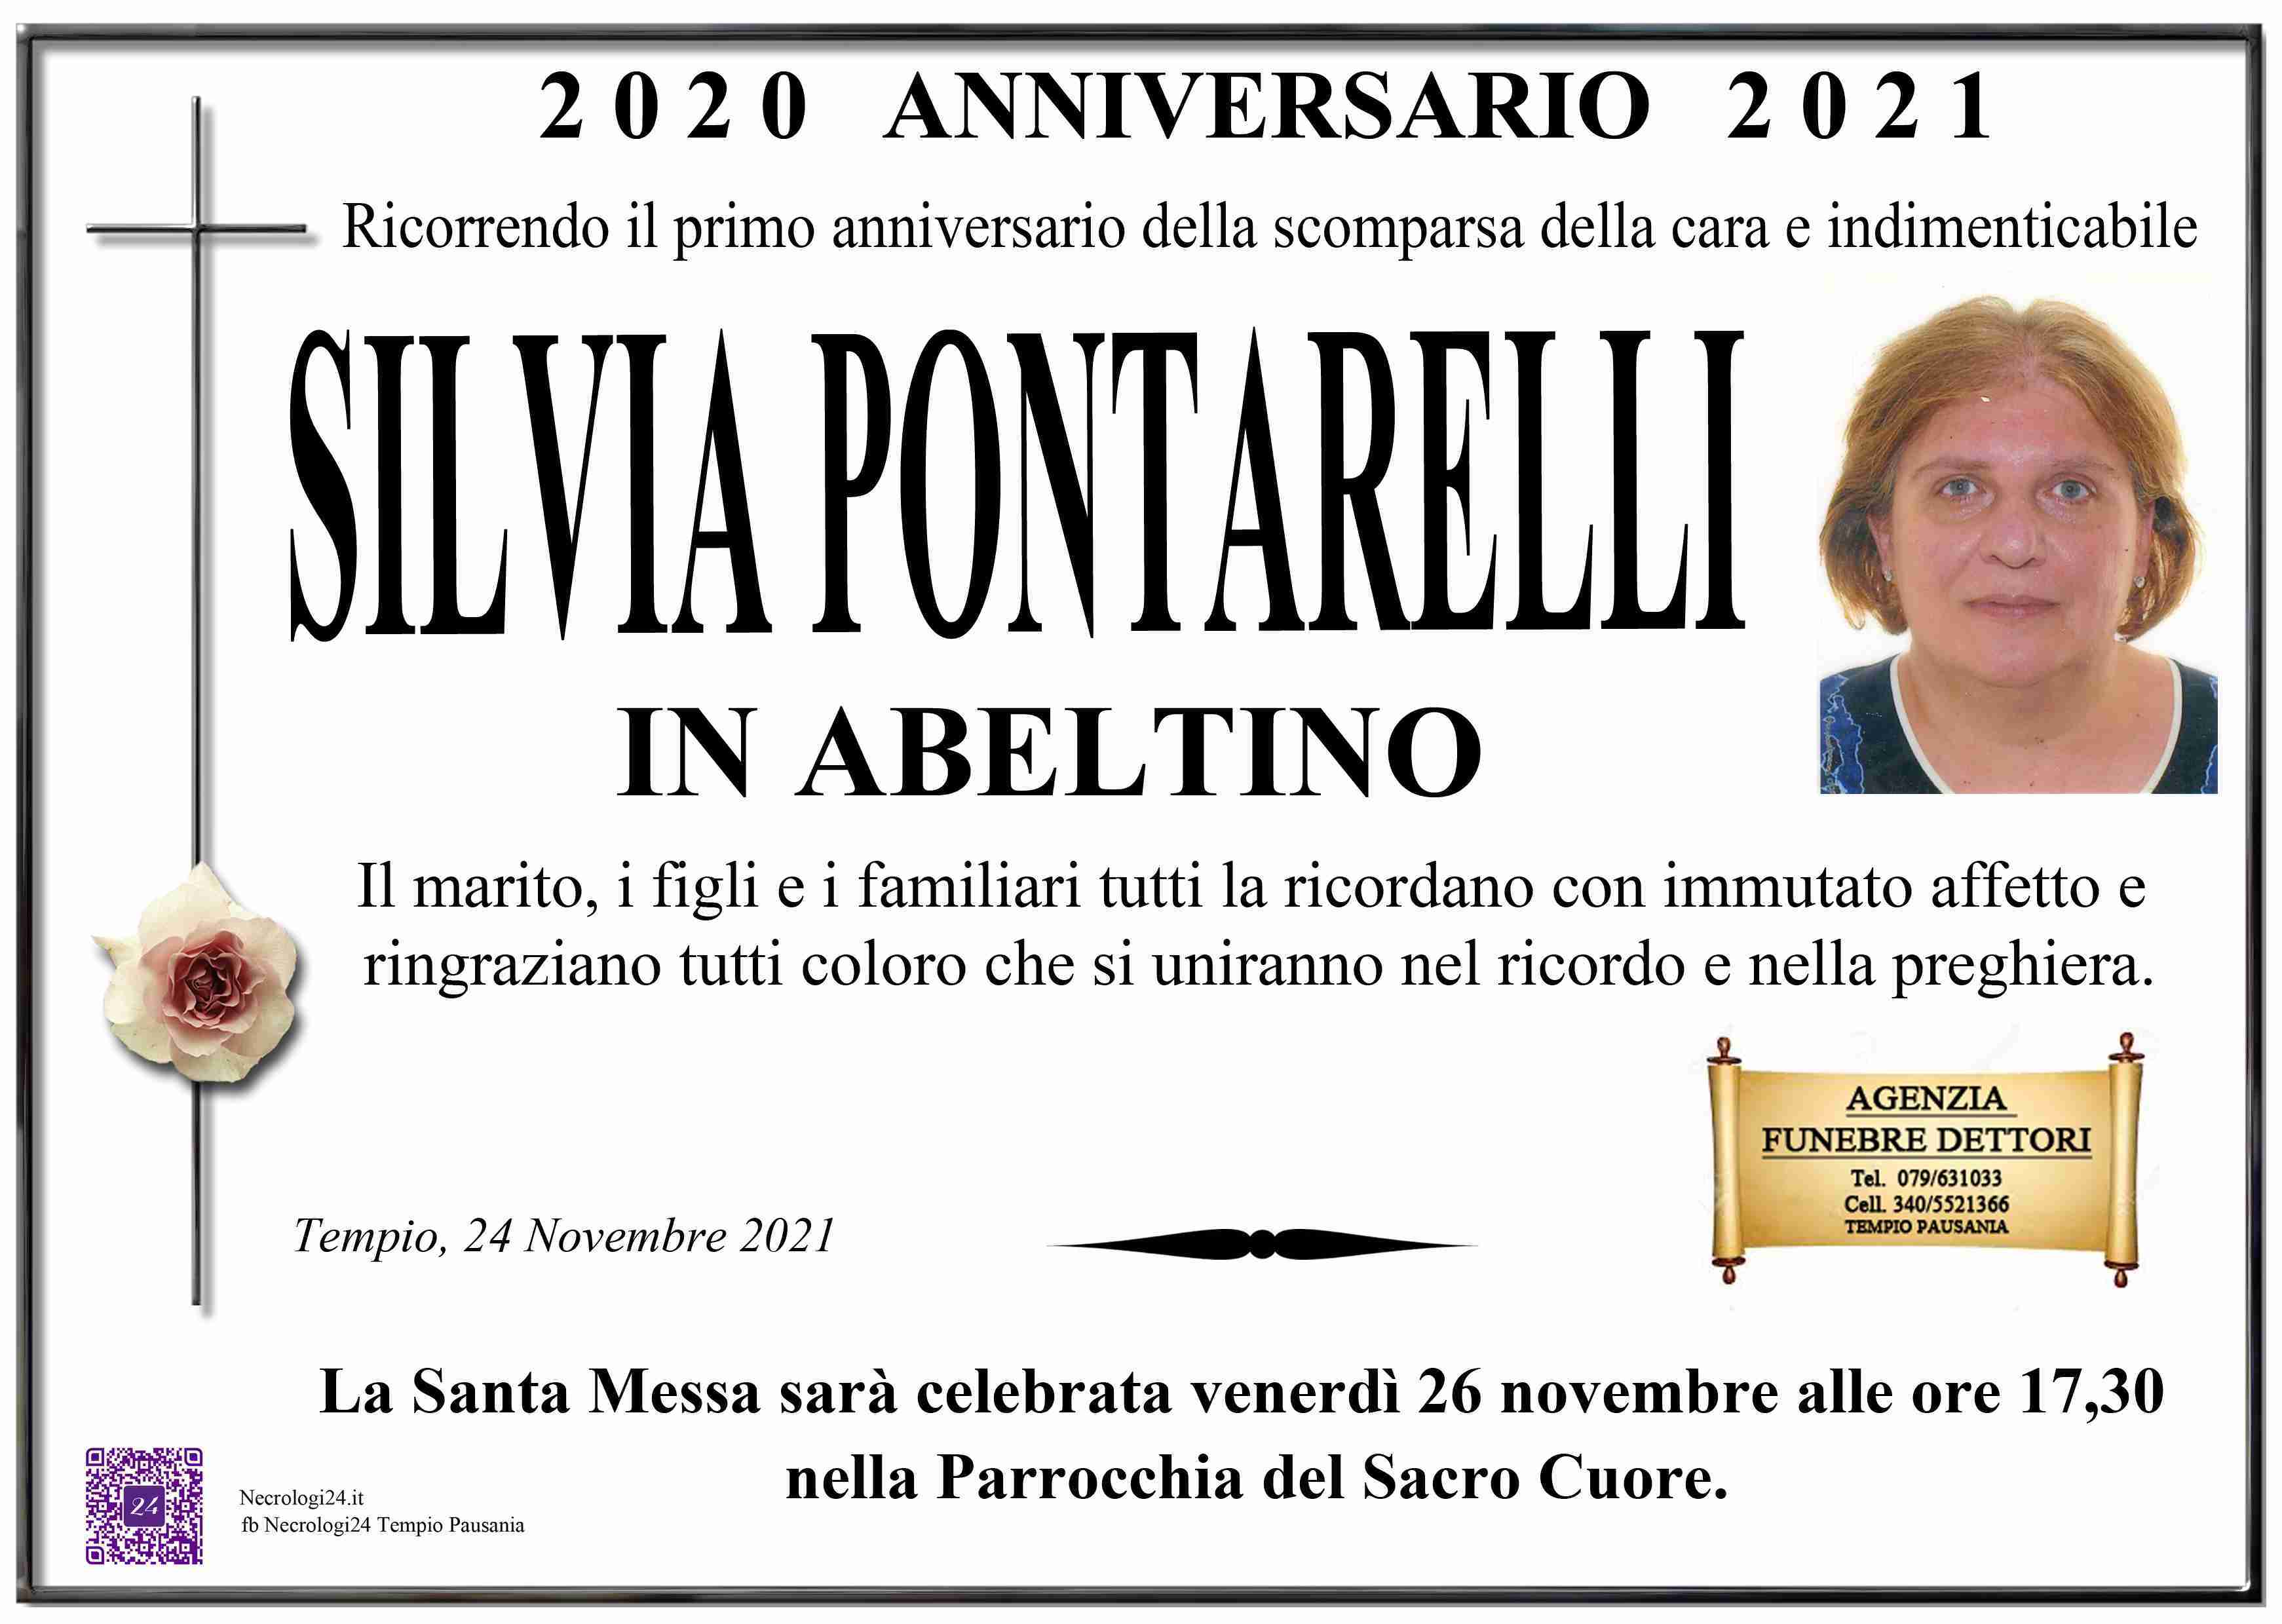 Silvia Pontarelli